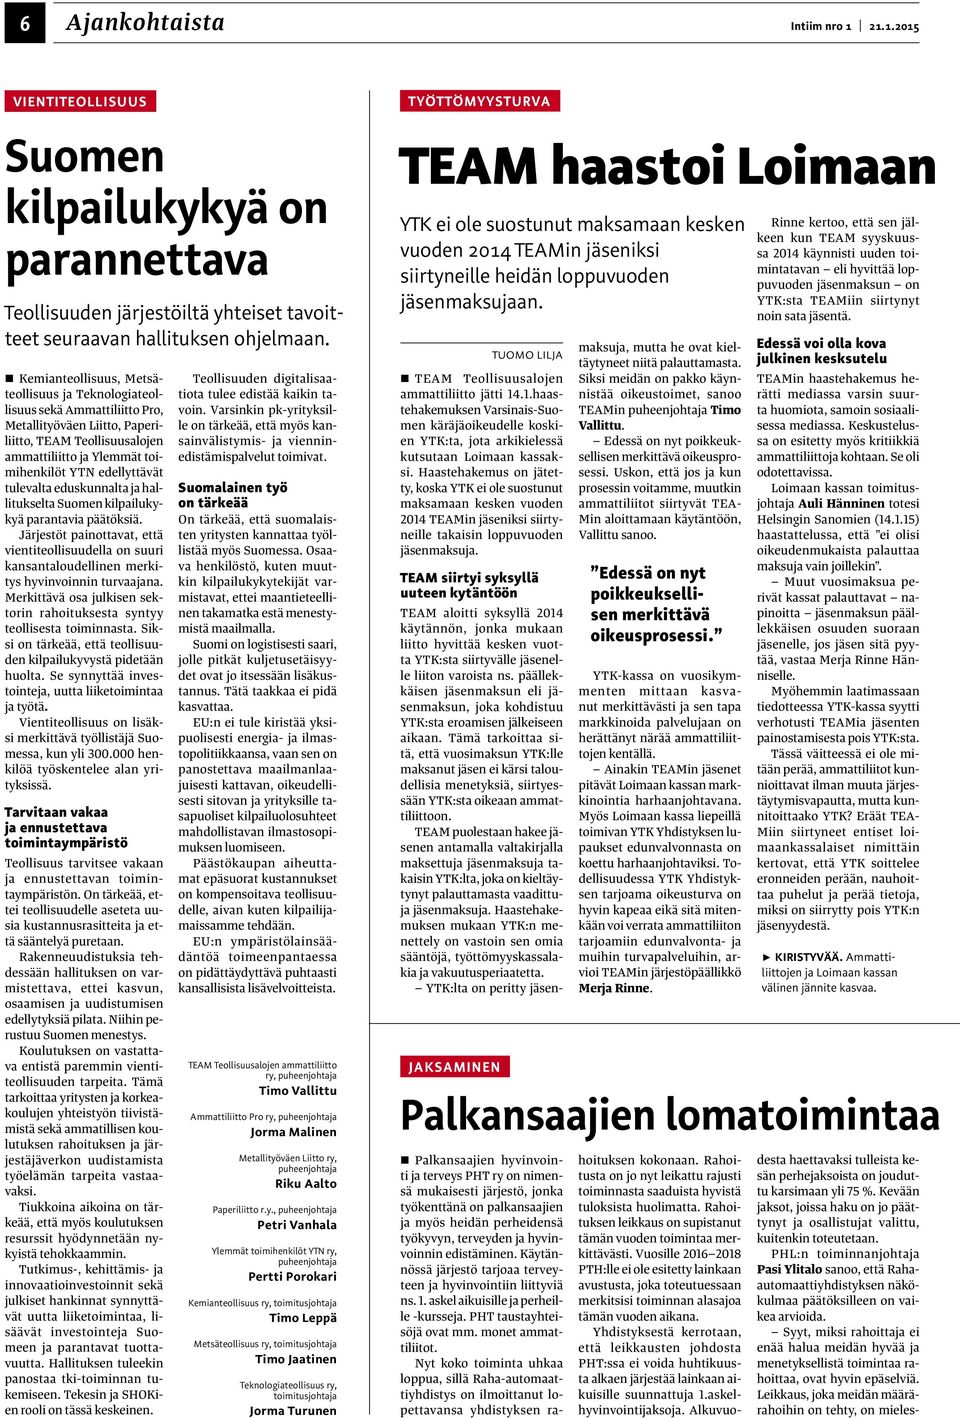 tulevalta eduskunnalta ja hallitukselta Suomen kilpailukykyä parantavia päätöksiä. Järjestöt painottavat, että vientiteollisuudella on suuri kansantaloudellinen merkitys hyvinvoinnin turvaajana.